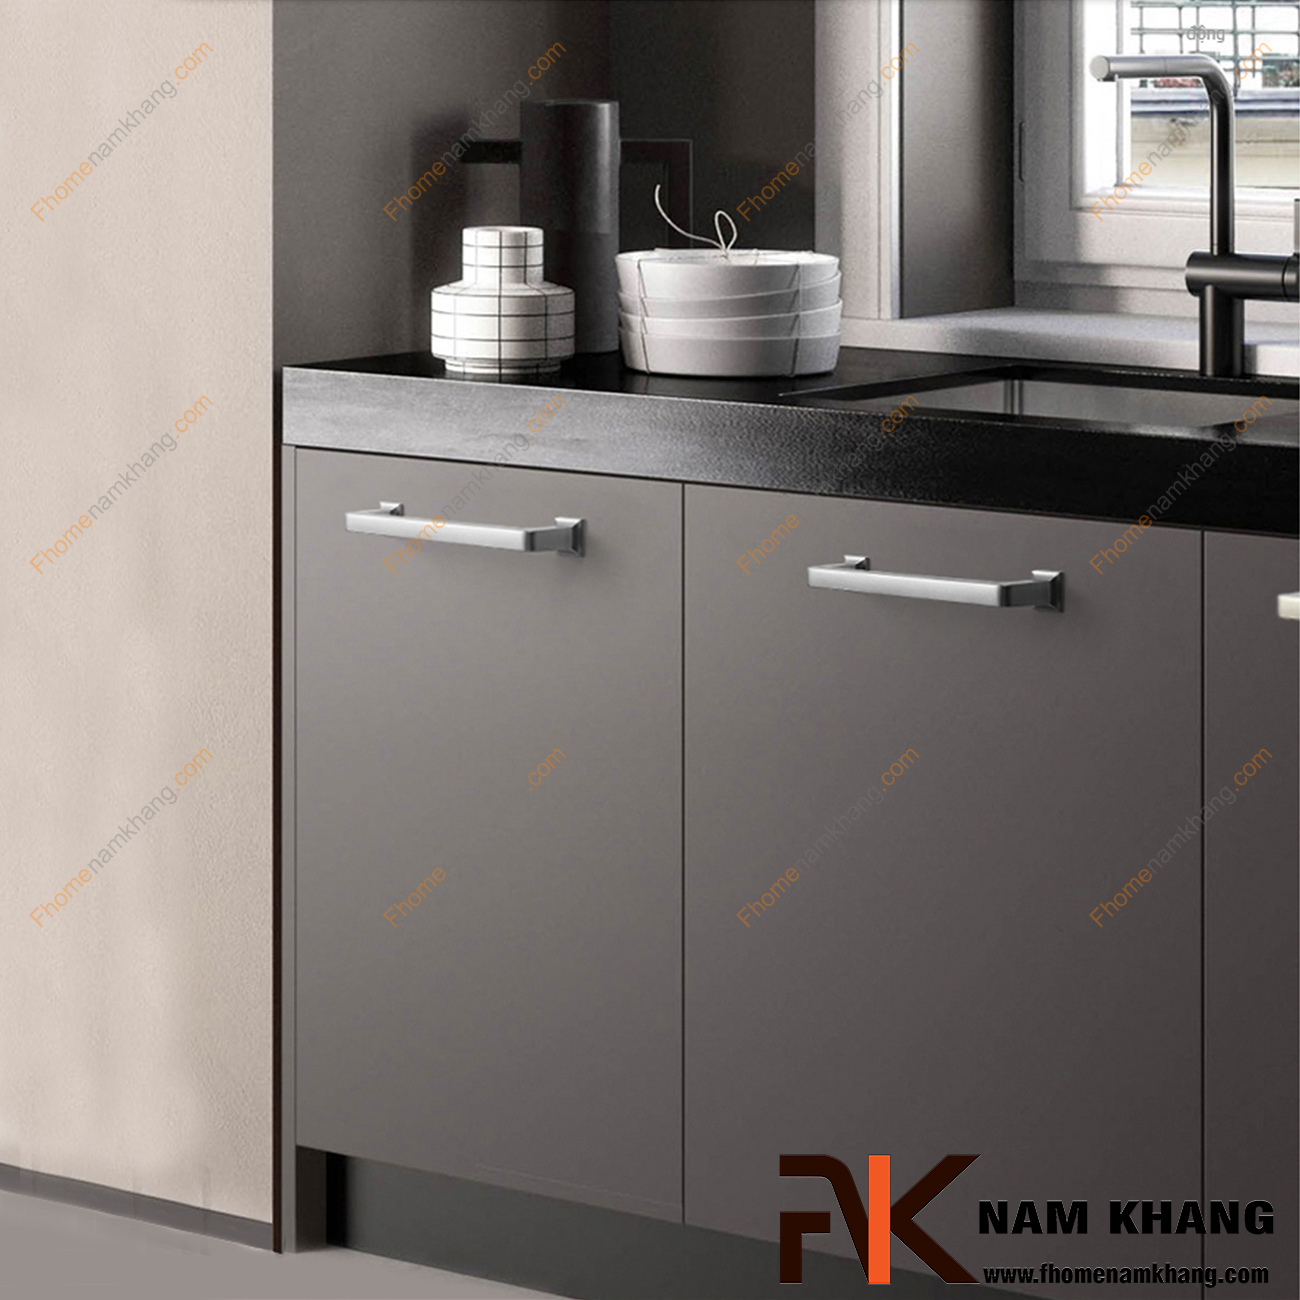 Tay nắm cửa tủ bếp màu ghi xám NK404-G là một thiết kế tay nắm tủ có thiết kế khá đơn giản. Bề ngoài của tay nắm dạng một thanh vuông nguyên khối được xử lý bo tròn các góc cạnh hiện đại. 